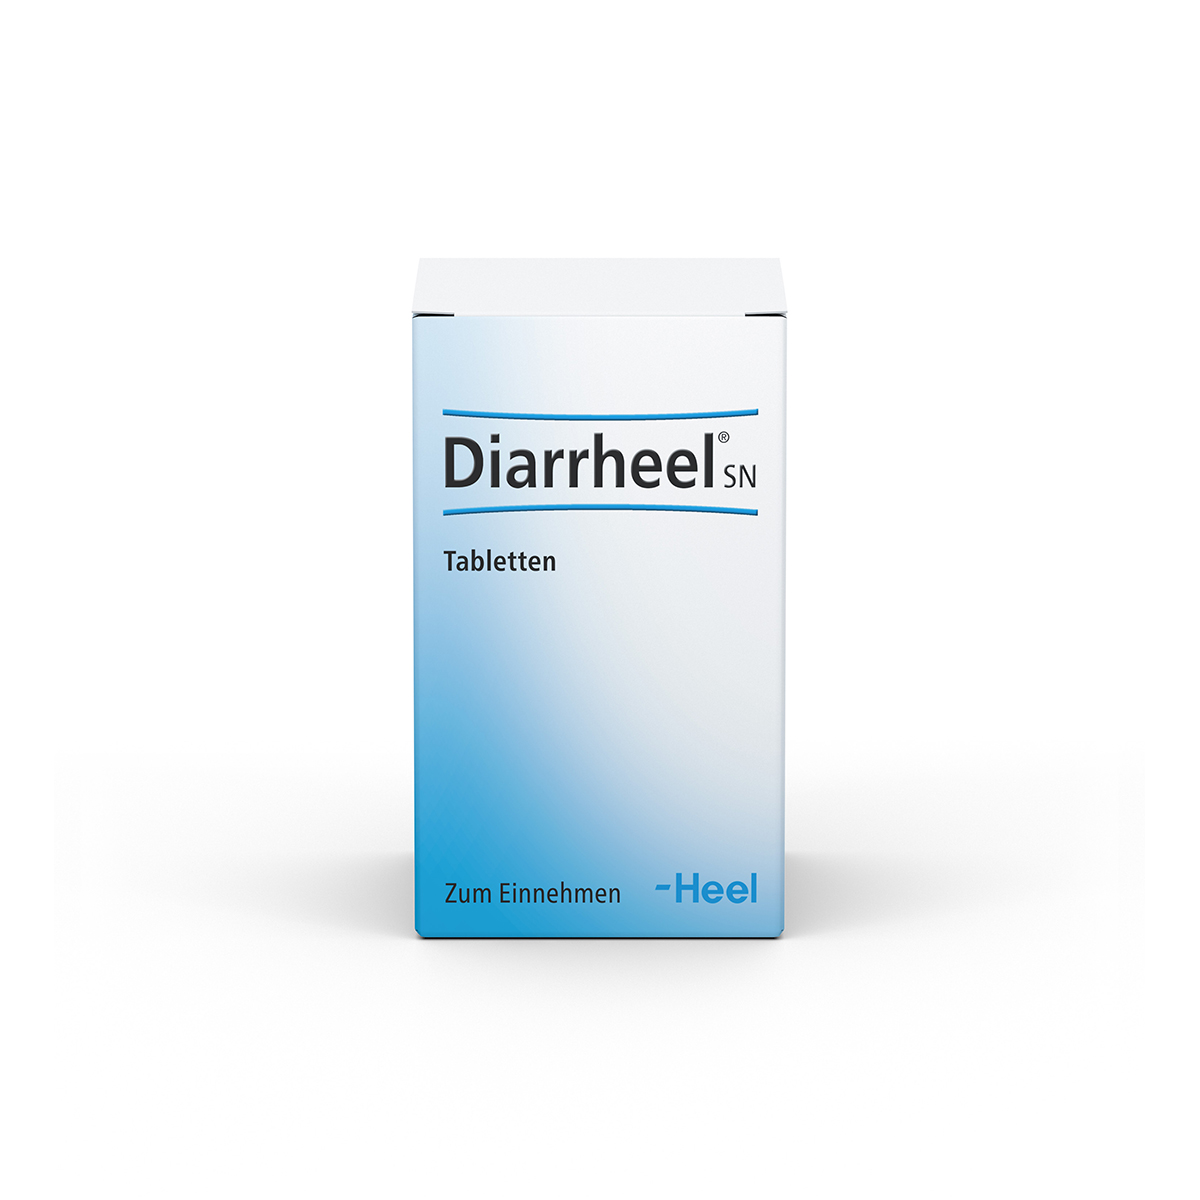 Diarrheel® SN Tabletten Tabletten